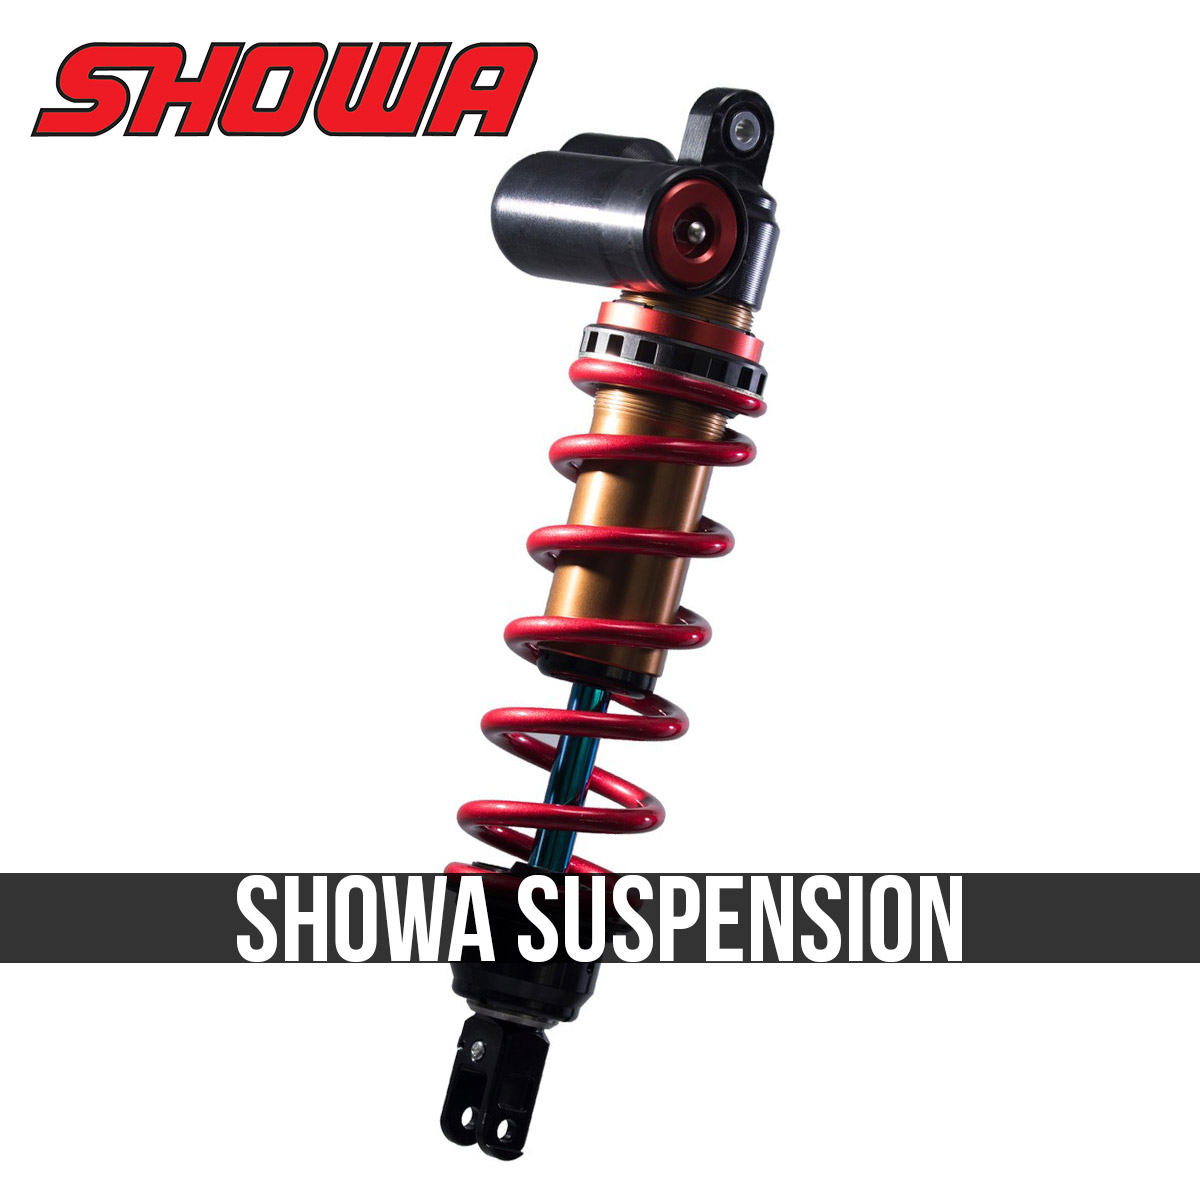 Showa suspension